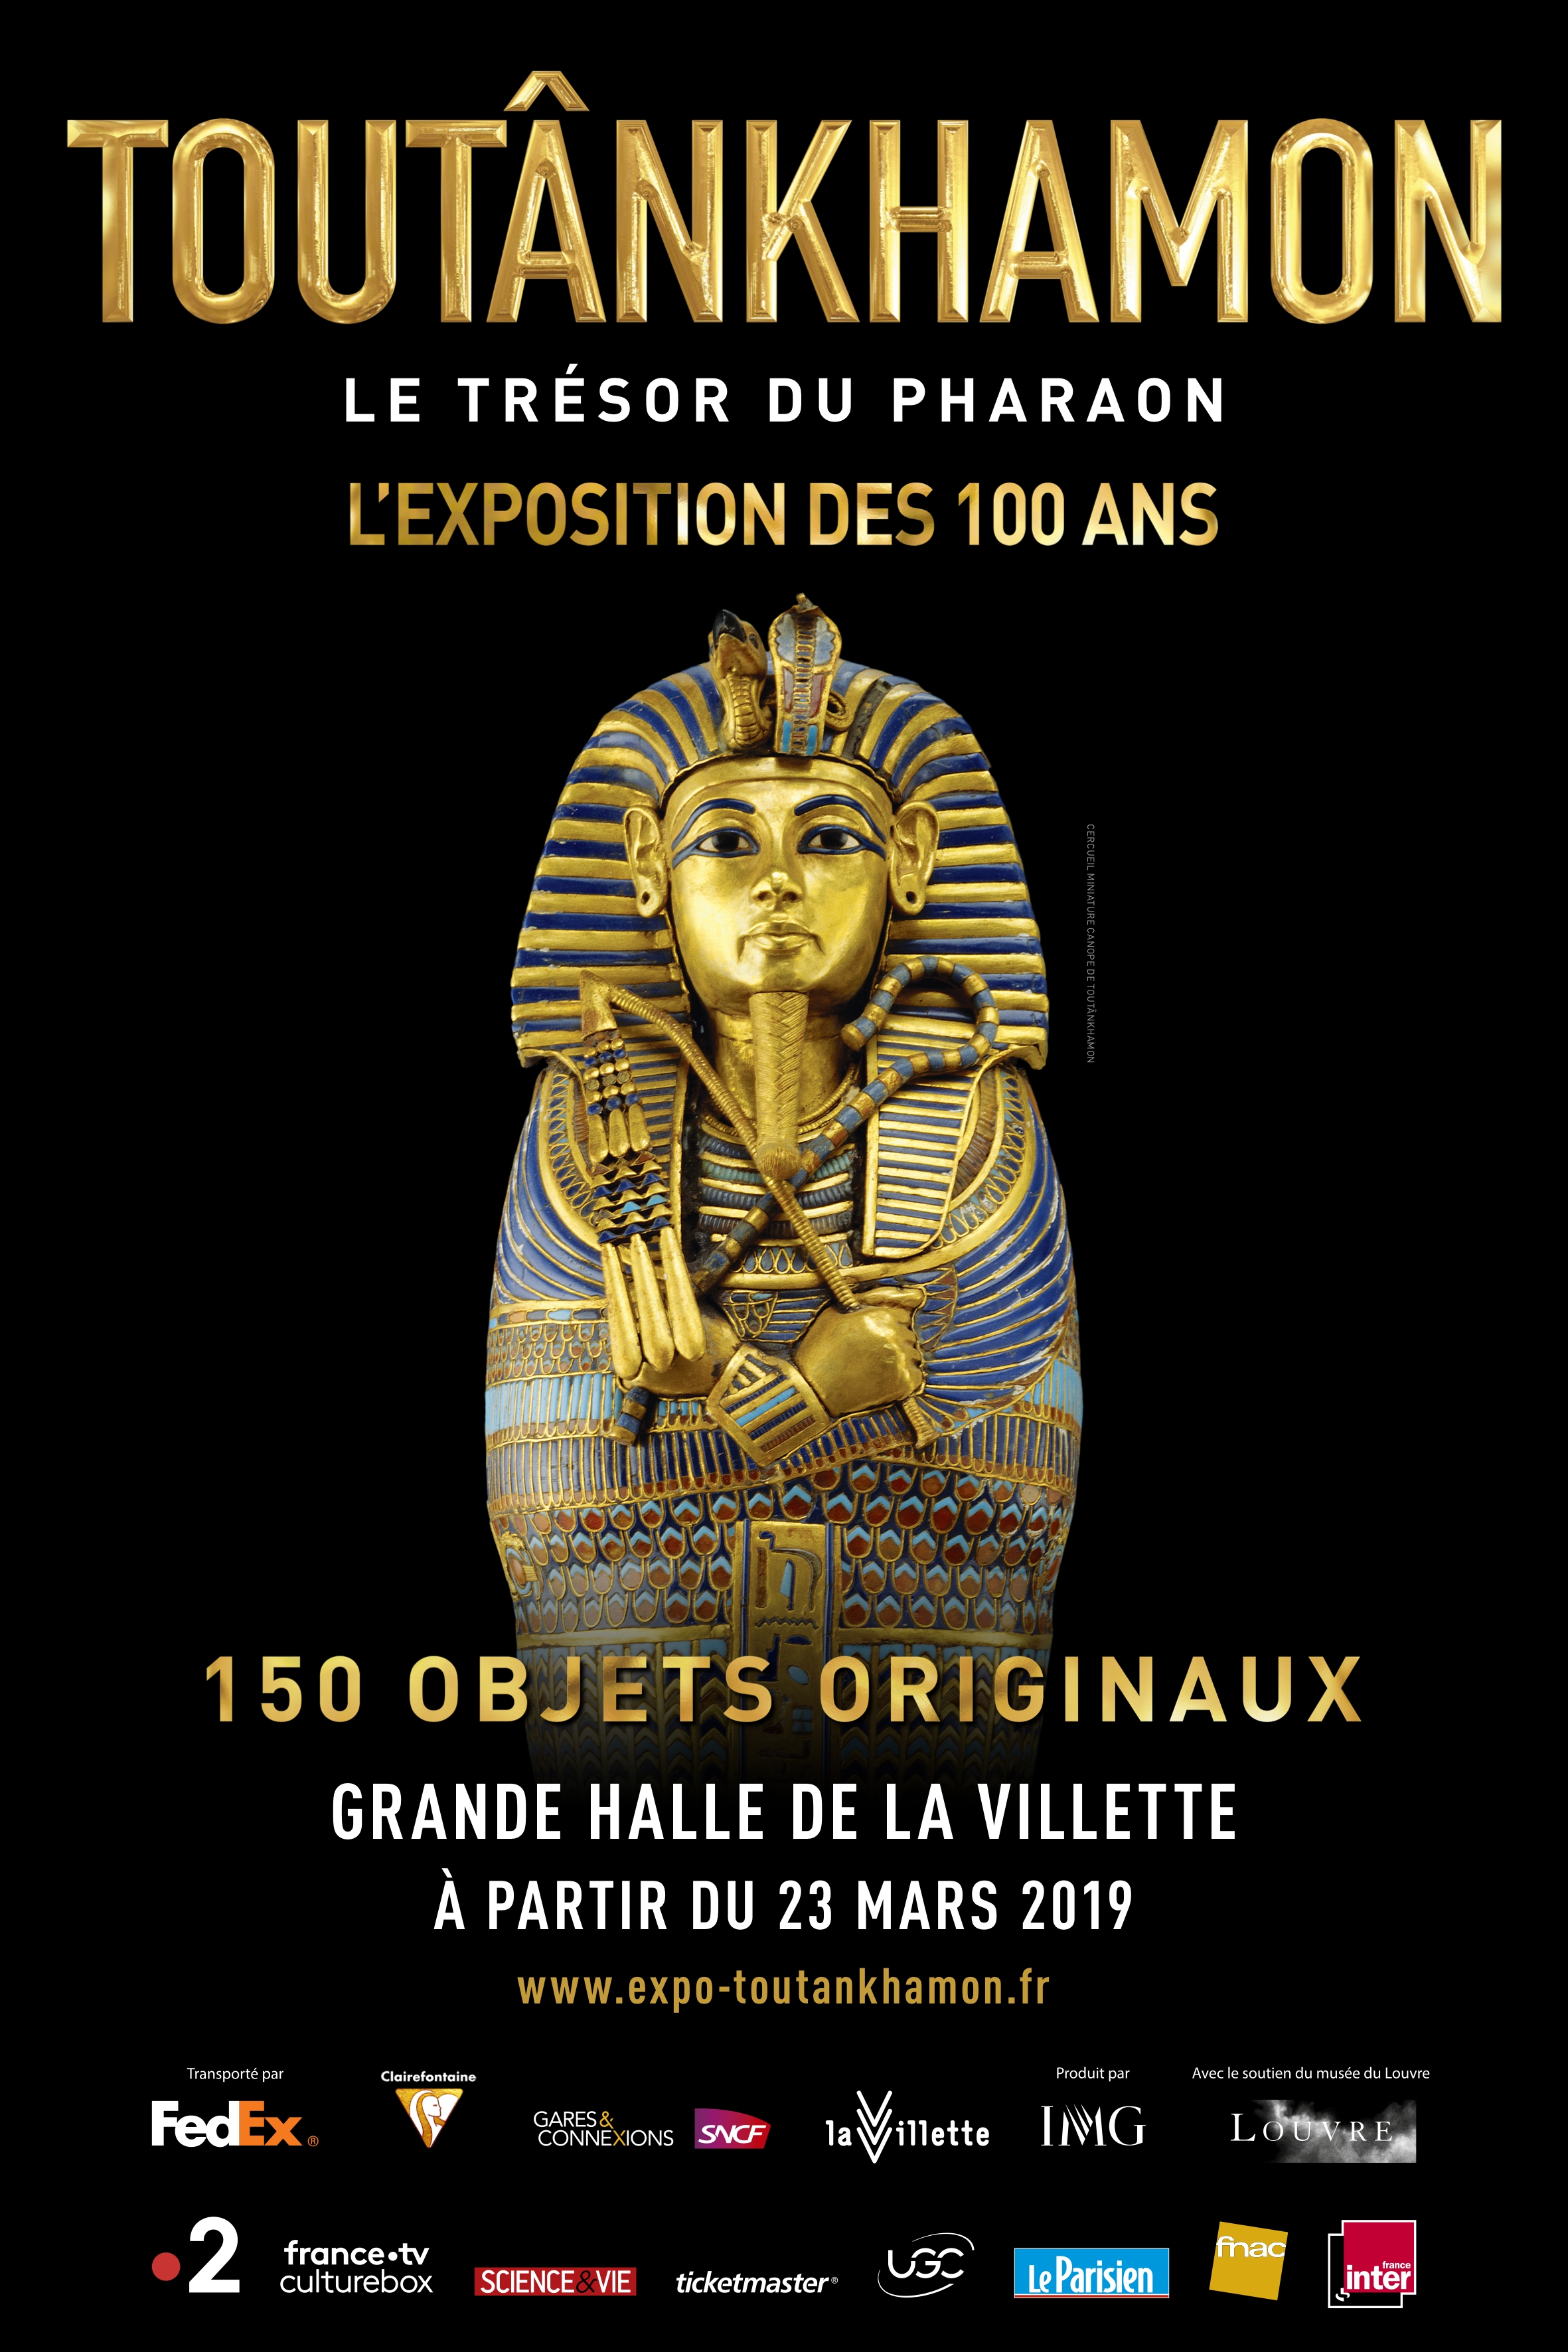 Tutankhamun, the Treasure of the Pharaoh. Exhibition, Parc de la Villette, Paris: 23 March - 15 September 2019